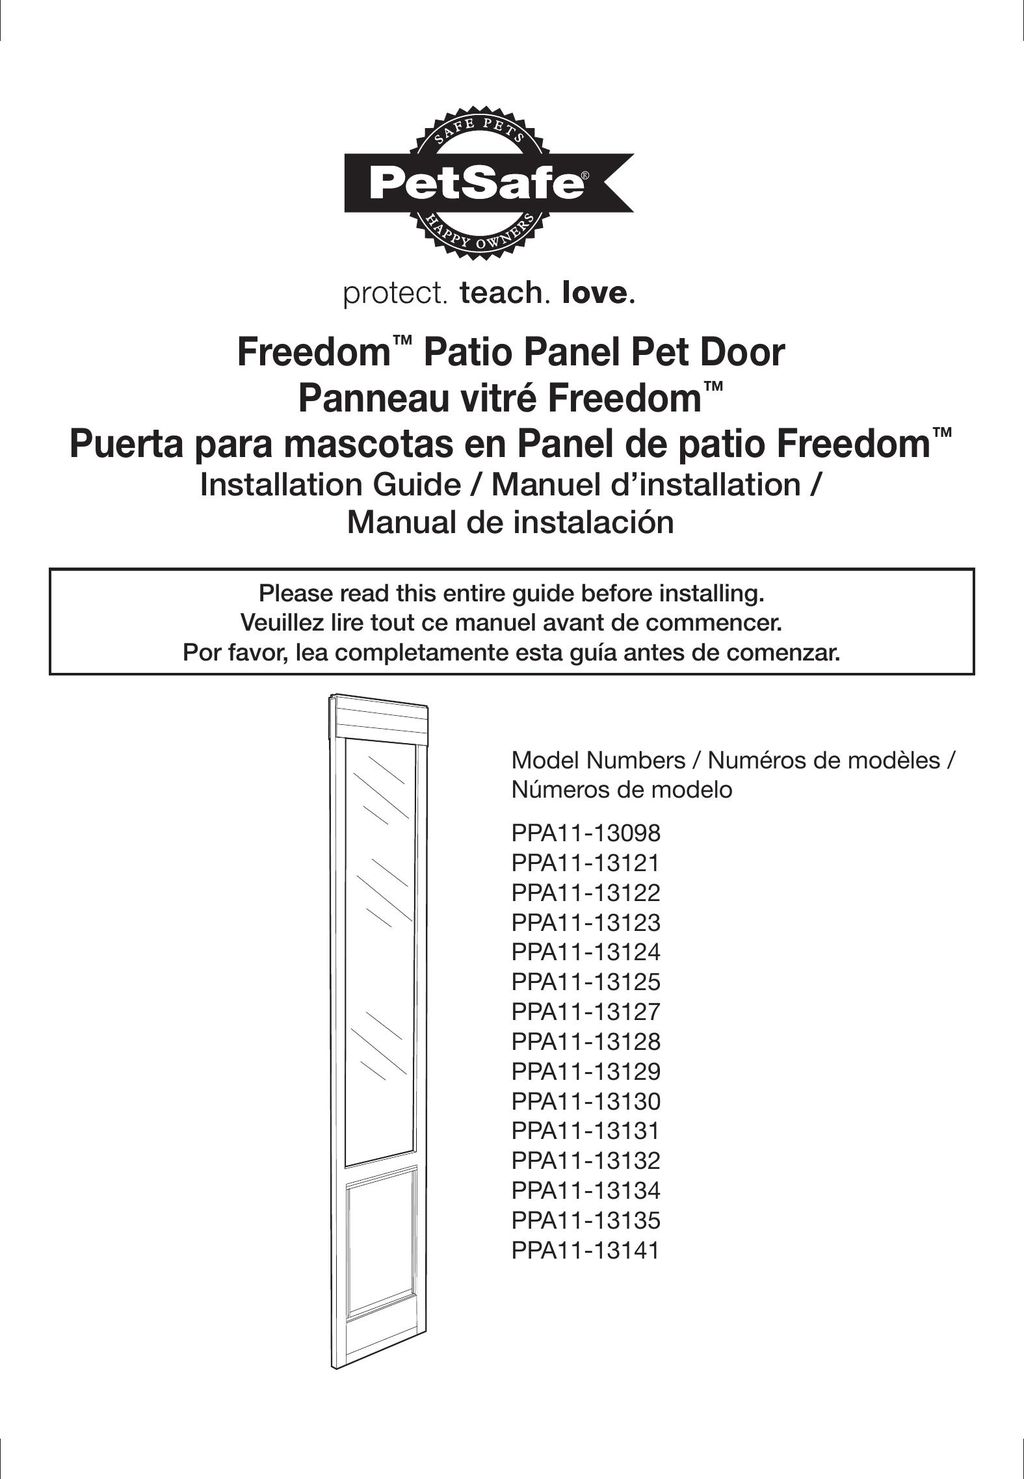 Petsafe PPA11-13122 Door User Manual